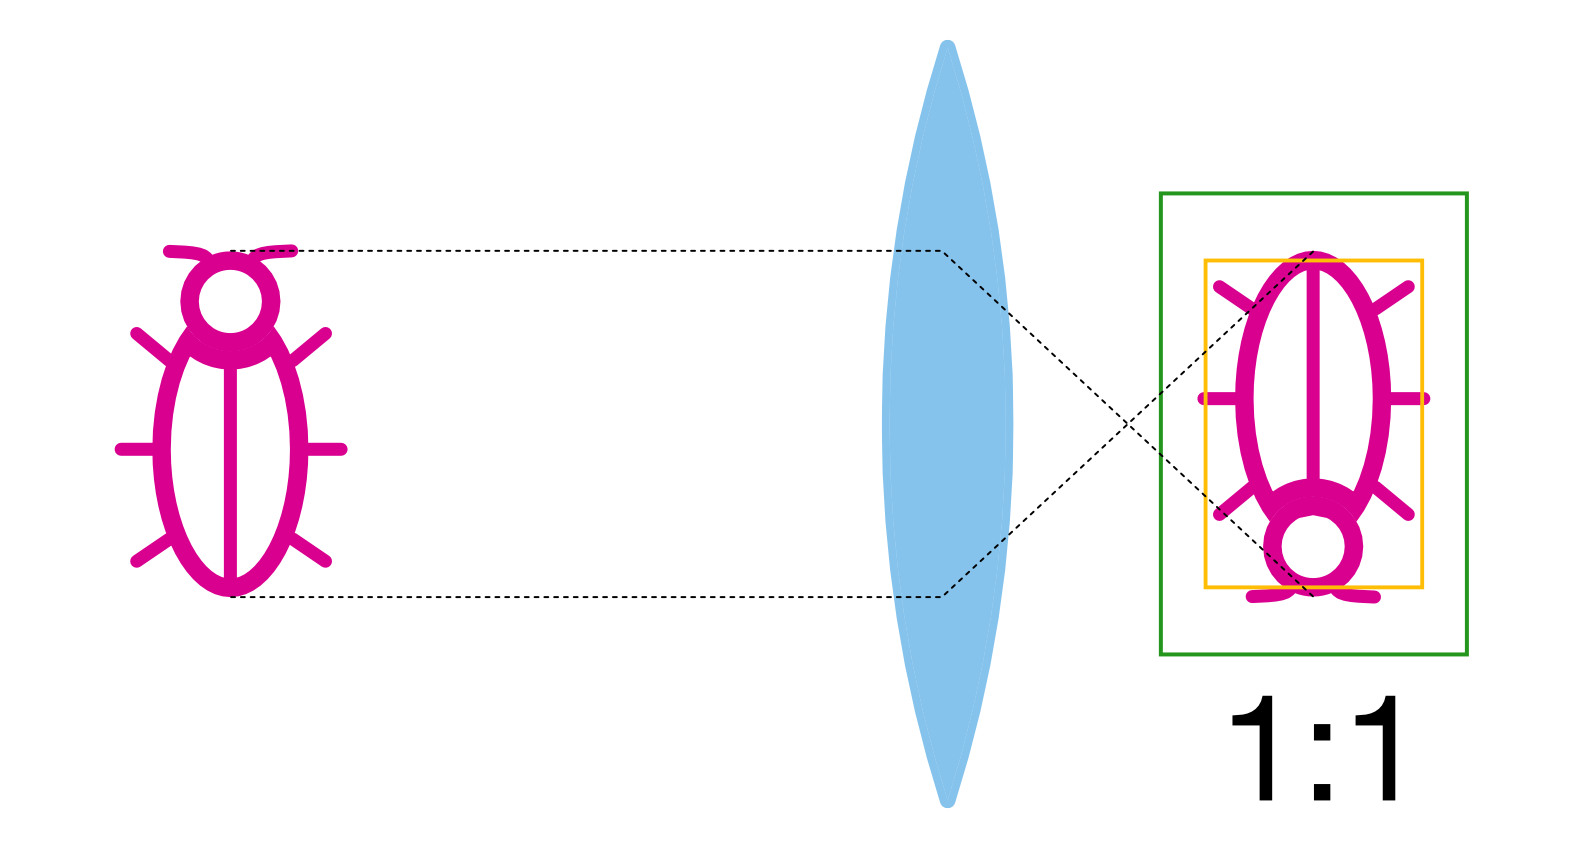 Vliv velikosti senzoru na výslednou fotografii při shodném měřátku zvětšení. Zelený obdélník symbolizuje fullframe a žlutý APS-C snímač. Jak vidno, pokud budeme na obou systémech mít objektiv s měřítkem zvětšení 1:1, tentýž objekt vyplní fotografii odlišně – na fullframe se náš brouk vejde do fotografie celý, na APS-C nikoliv – v podstatě jsme tedy vyfotili větší detail.